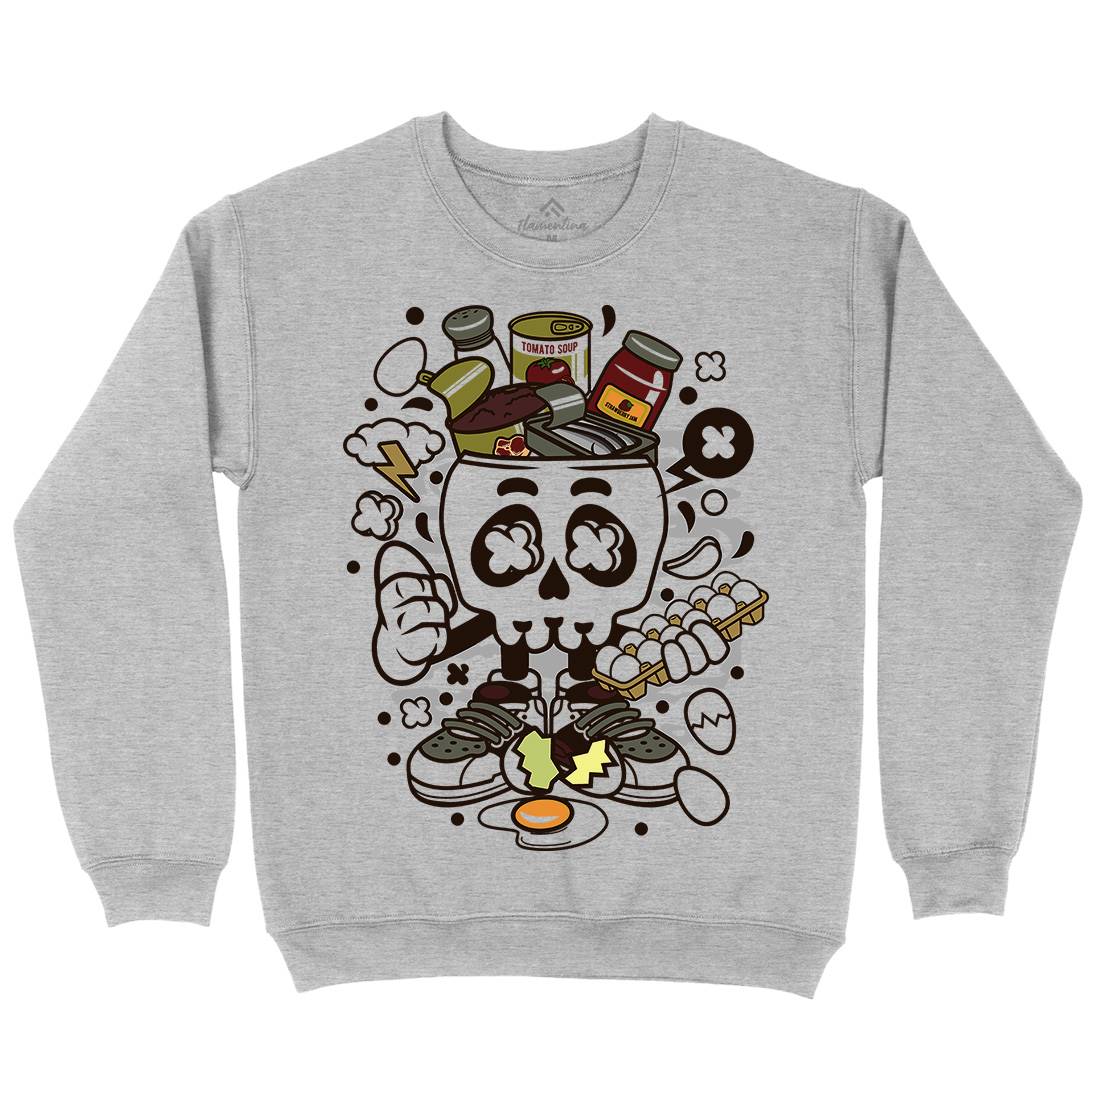 Egg Skull Kids Crew Neck Sweatshirt Food C102